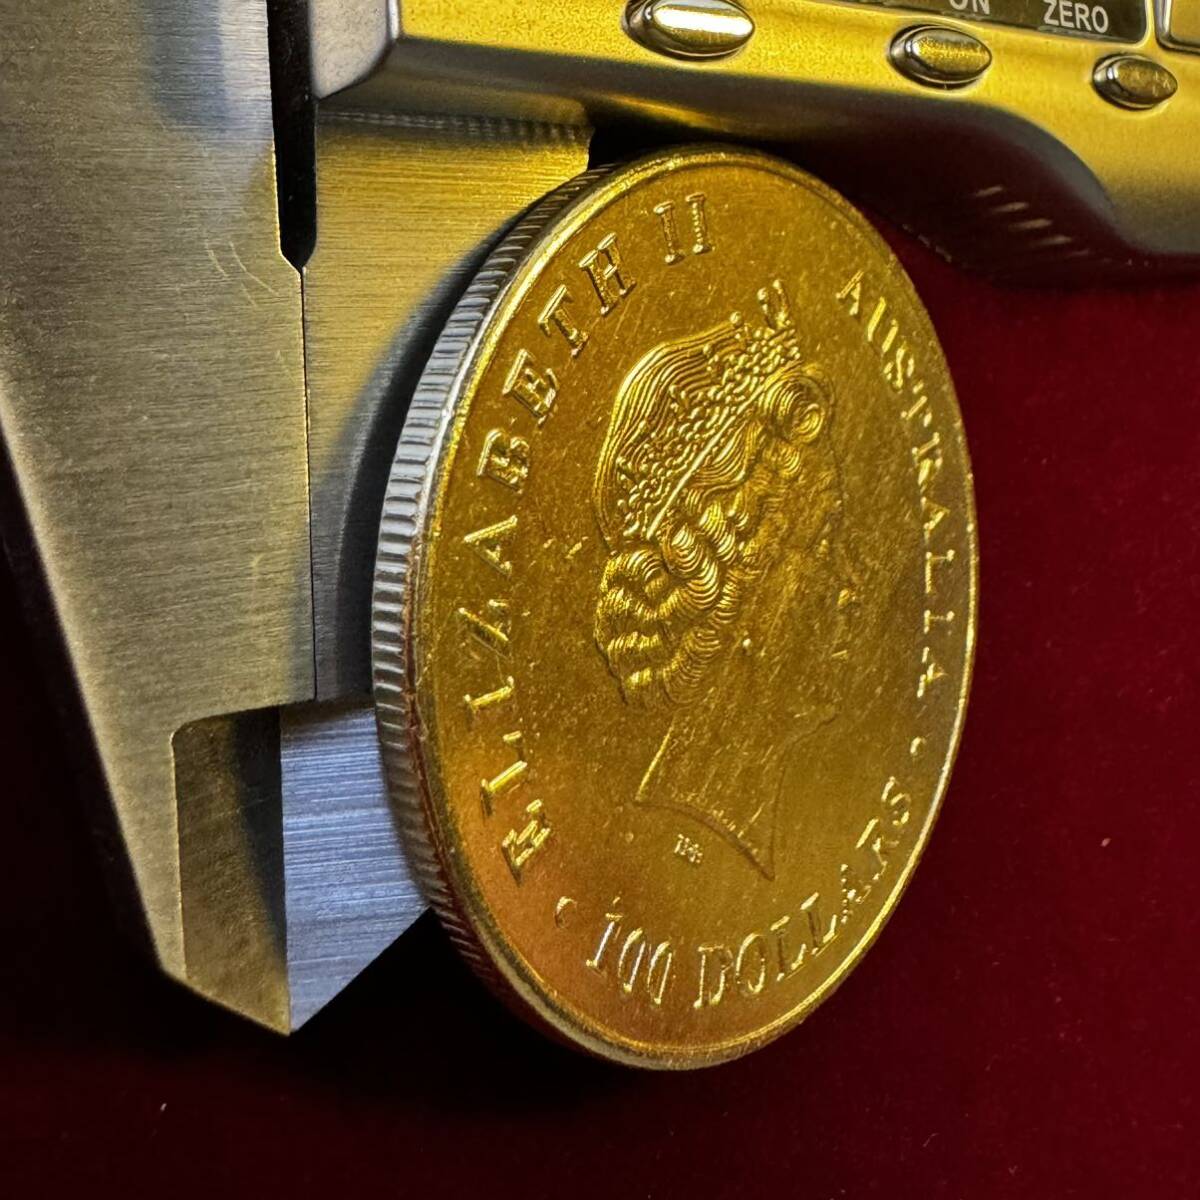 オーストラリア 硬貨 古銭 エリザベス2世 2015年 カンガルー 月光 記念幣 コイン 金貨 海外硬貨 外国古銭 の画像3